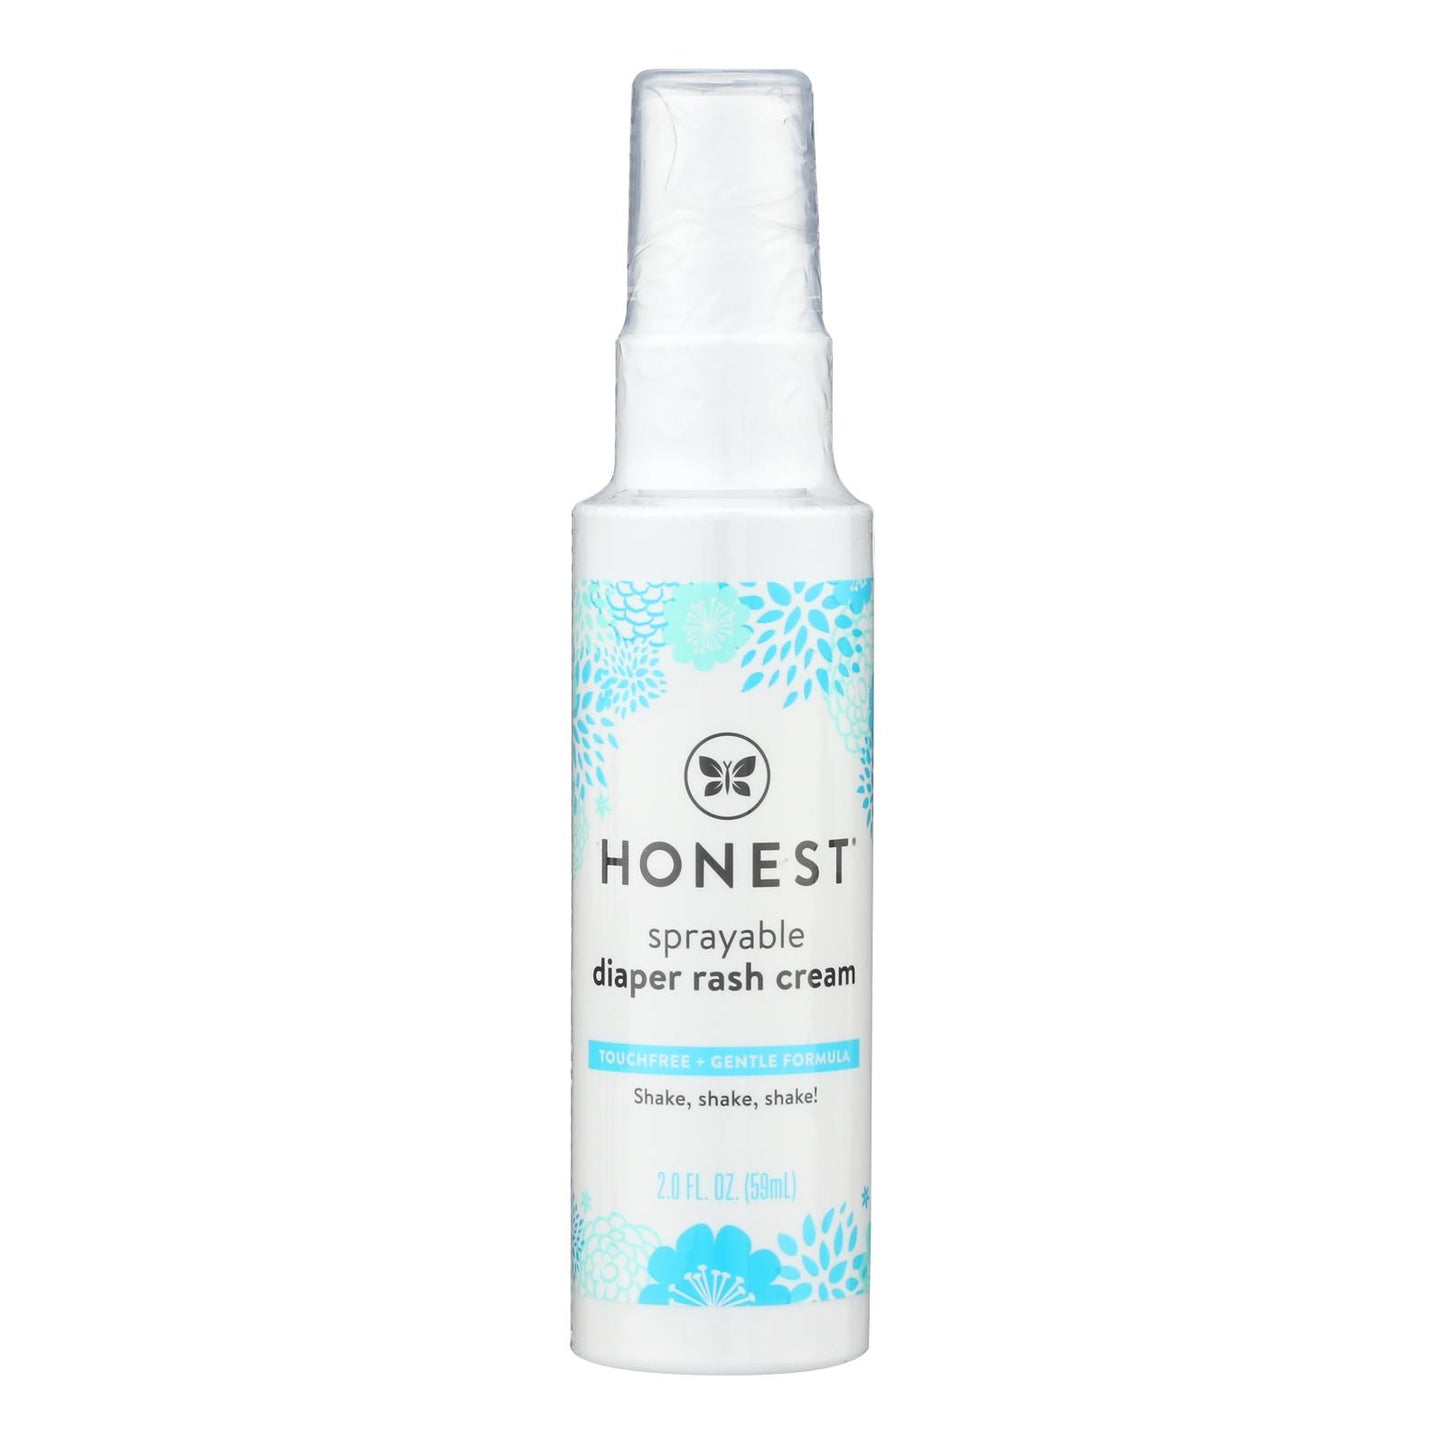 The Honest Company Diaper Rash Cream Spray, 2 fl. oz.